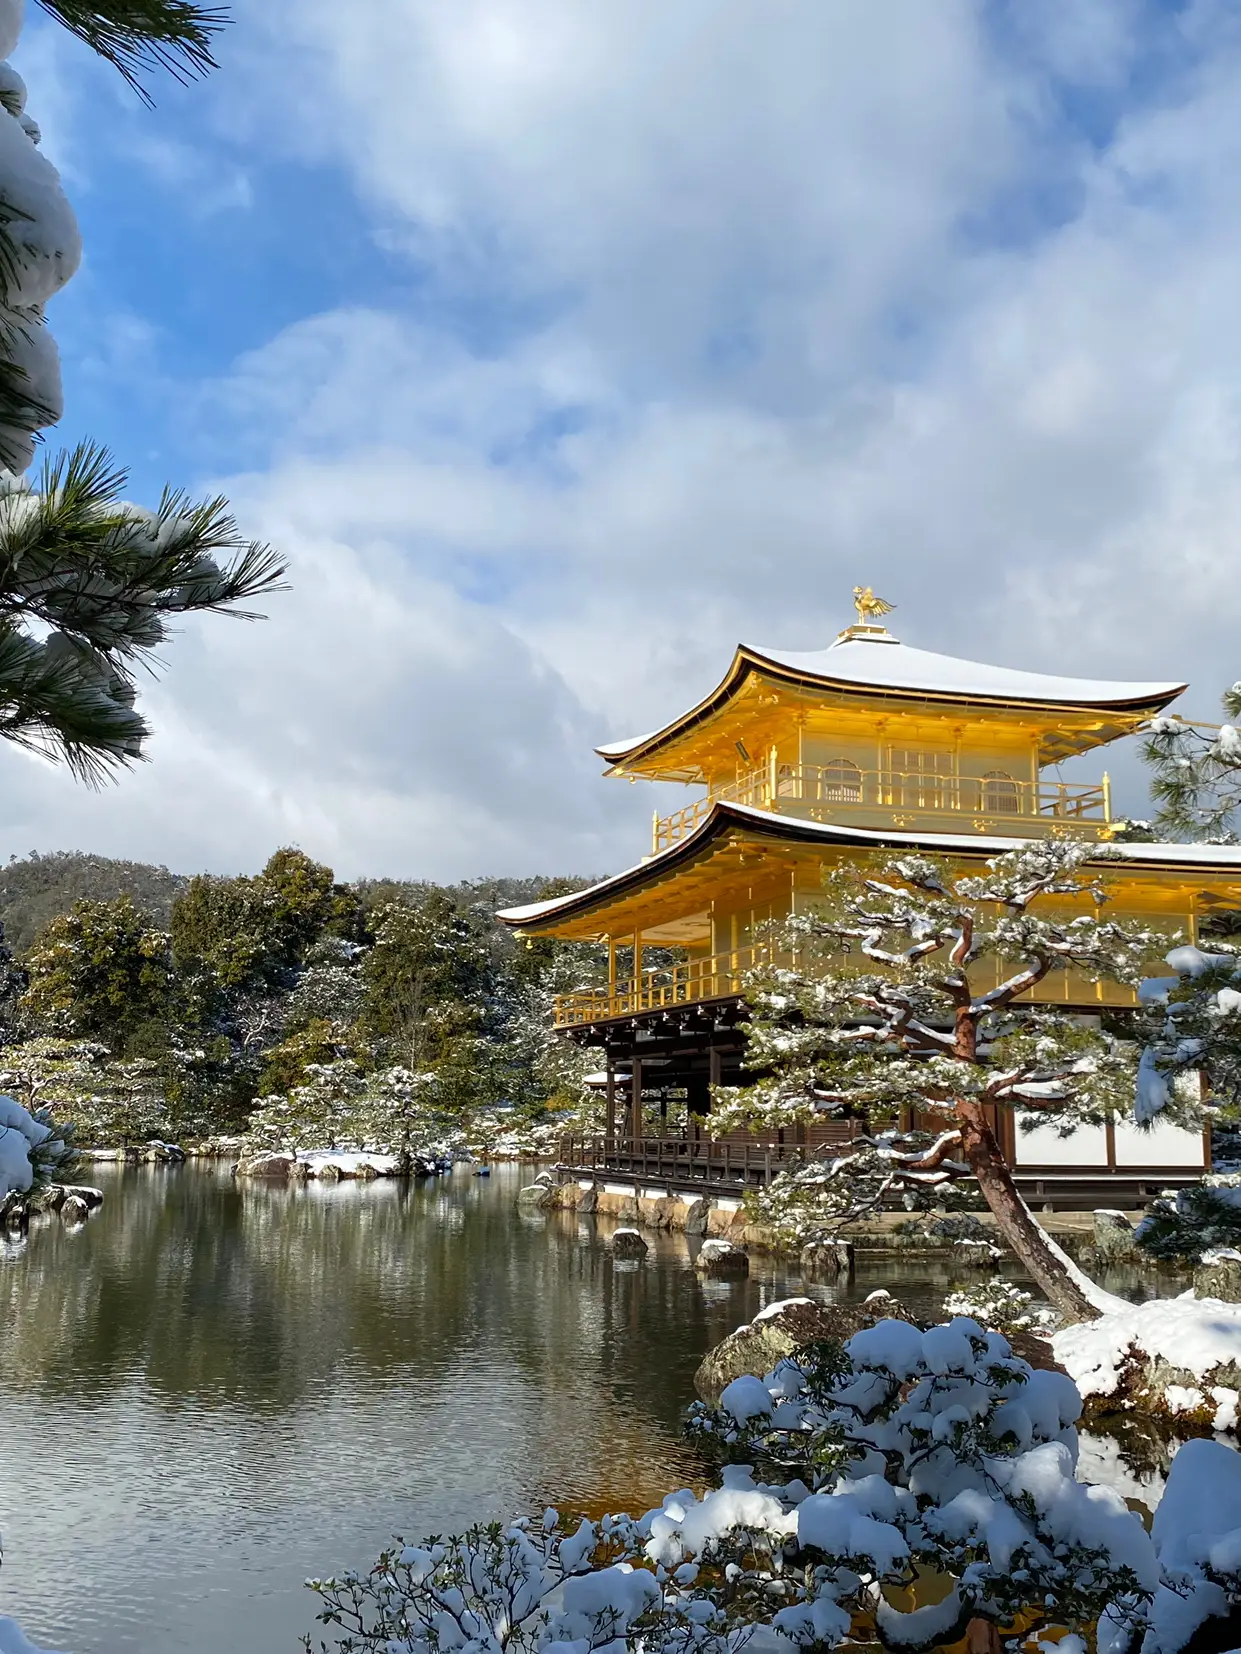 冬の絶景】一度は見たい絶景❄️雪降る日の金閣寺は別格に綺麗✨ | まぁやん☀️が投稿したフォトブック | Lemon8 3810円